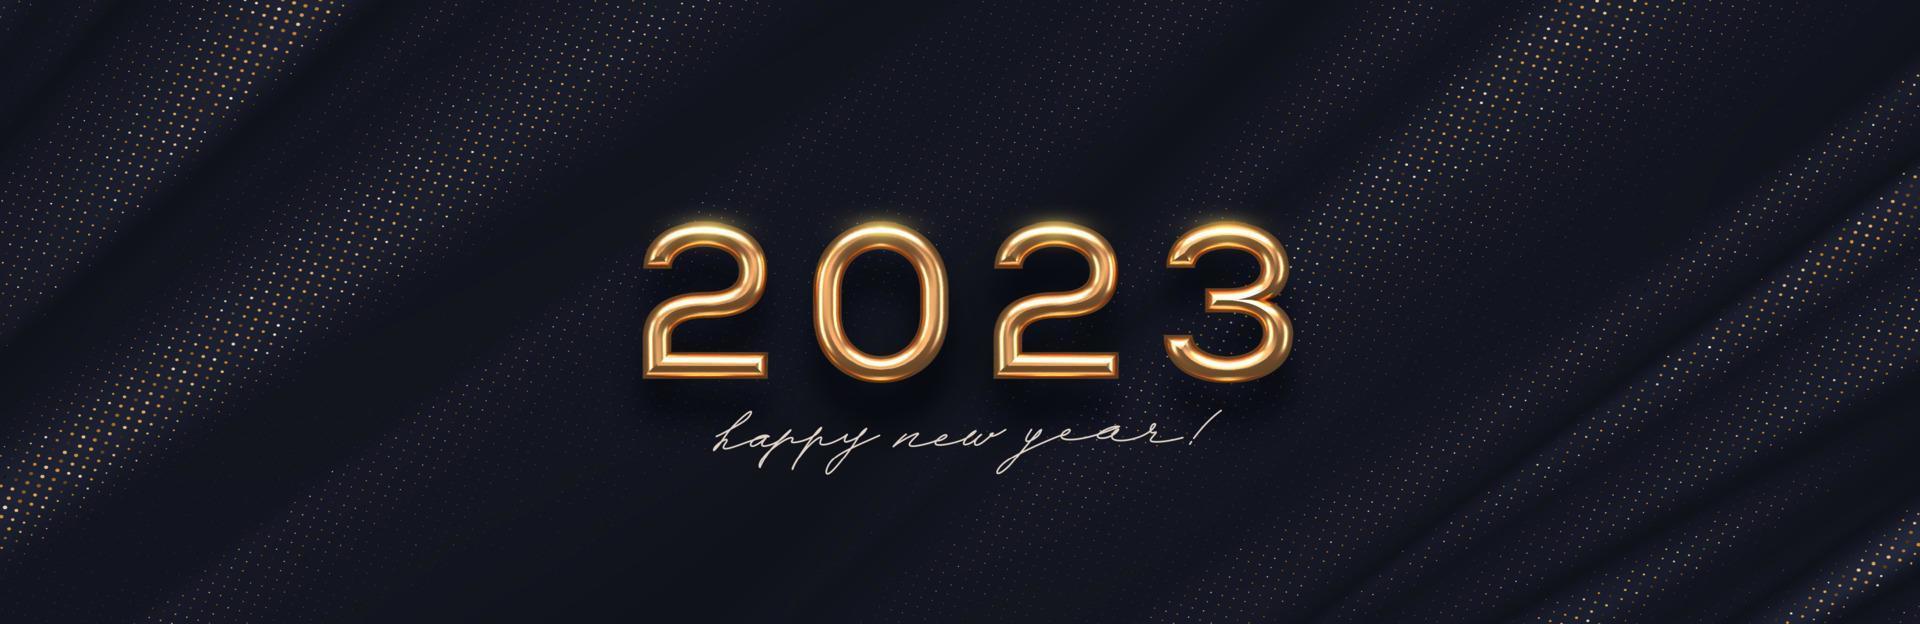 2023 nieuw jaar gouden logo Aan abstract zwart textiel achtergrond. groet ontwerp met realistisch goud metaal aantal van jaar. ontwerp voor groet kaart, uitnodiging, kalender, enz. vector